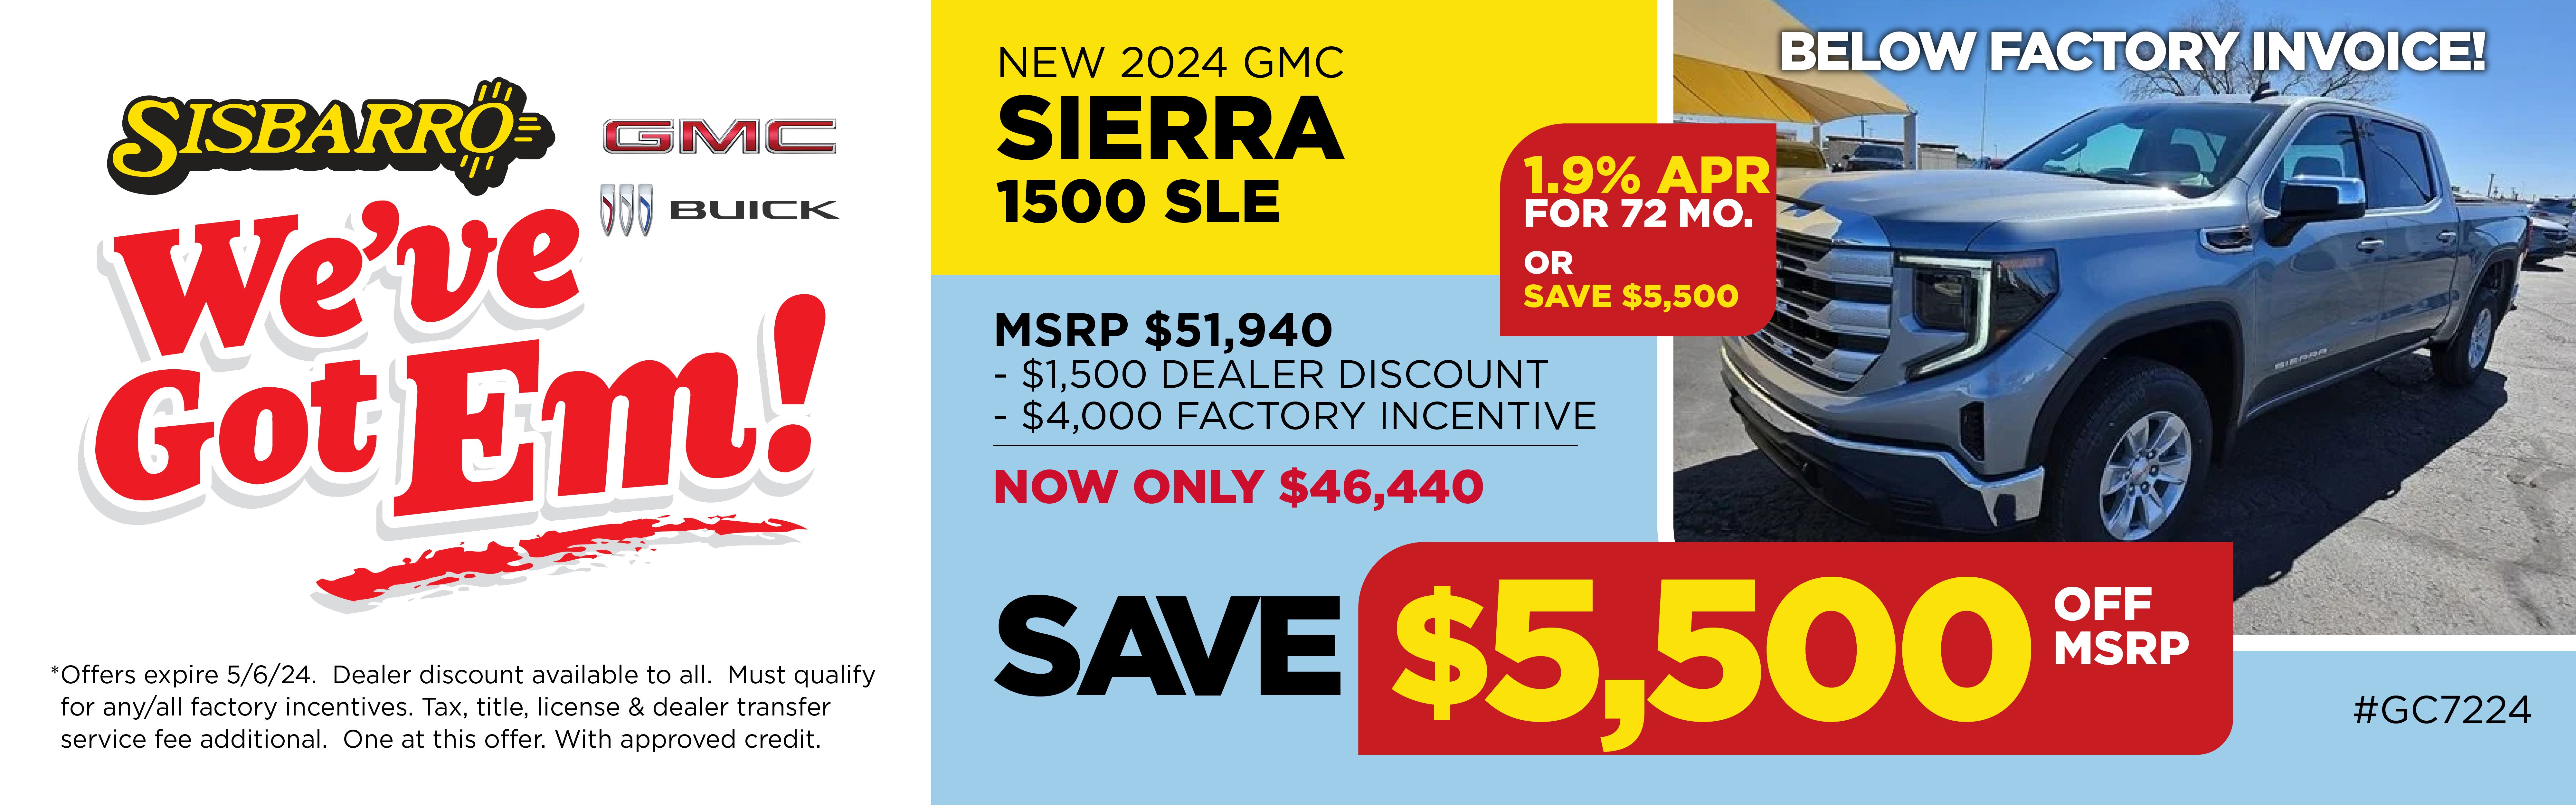 New 2024 GMC Sierra 1500 SLE